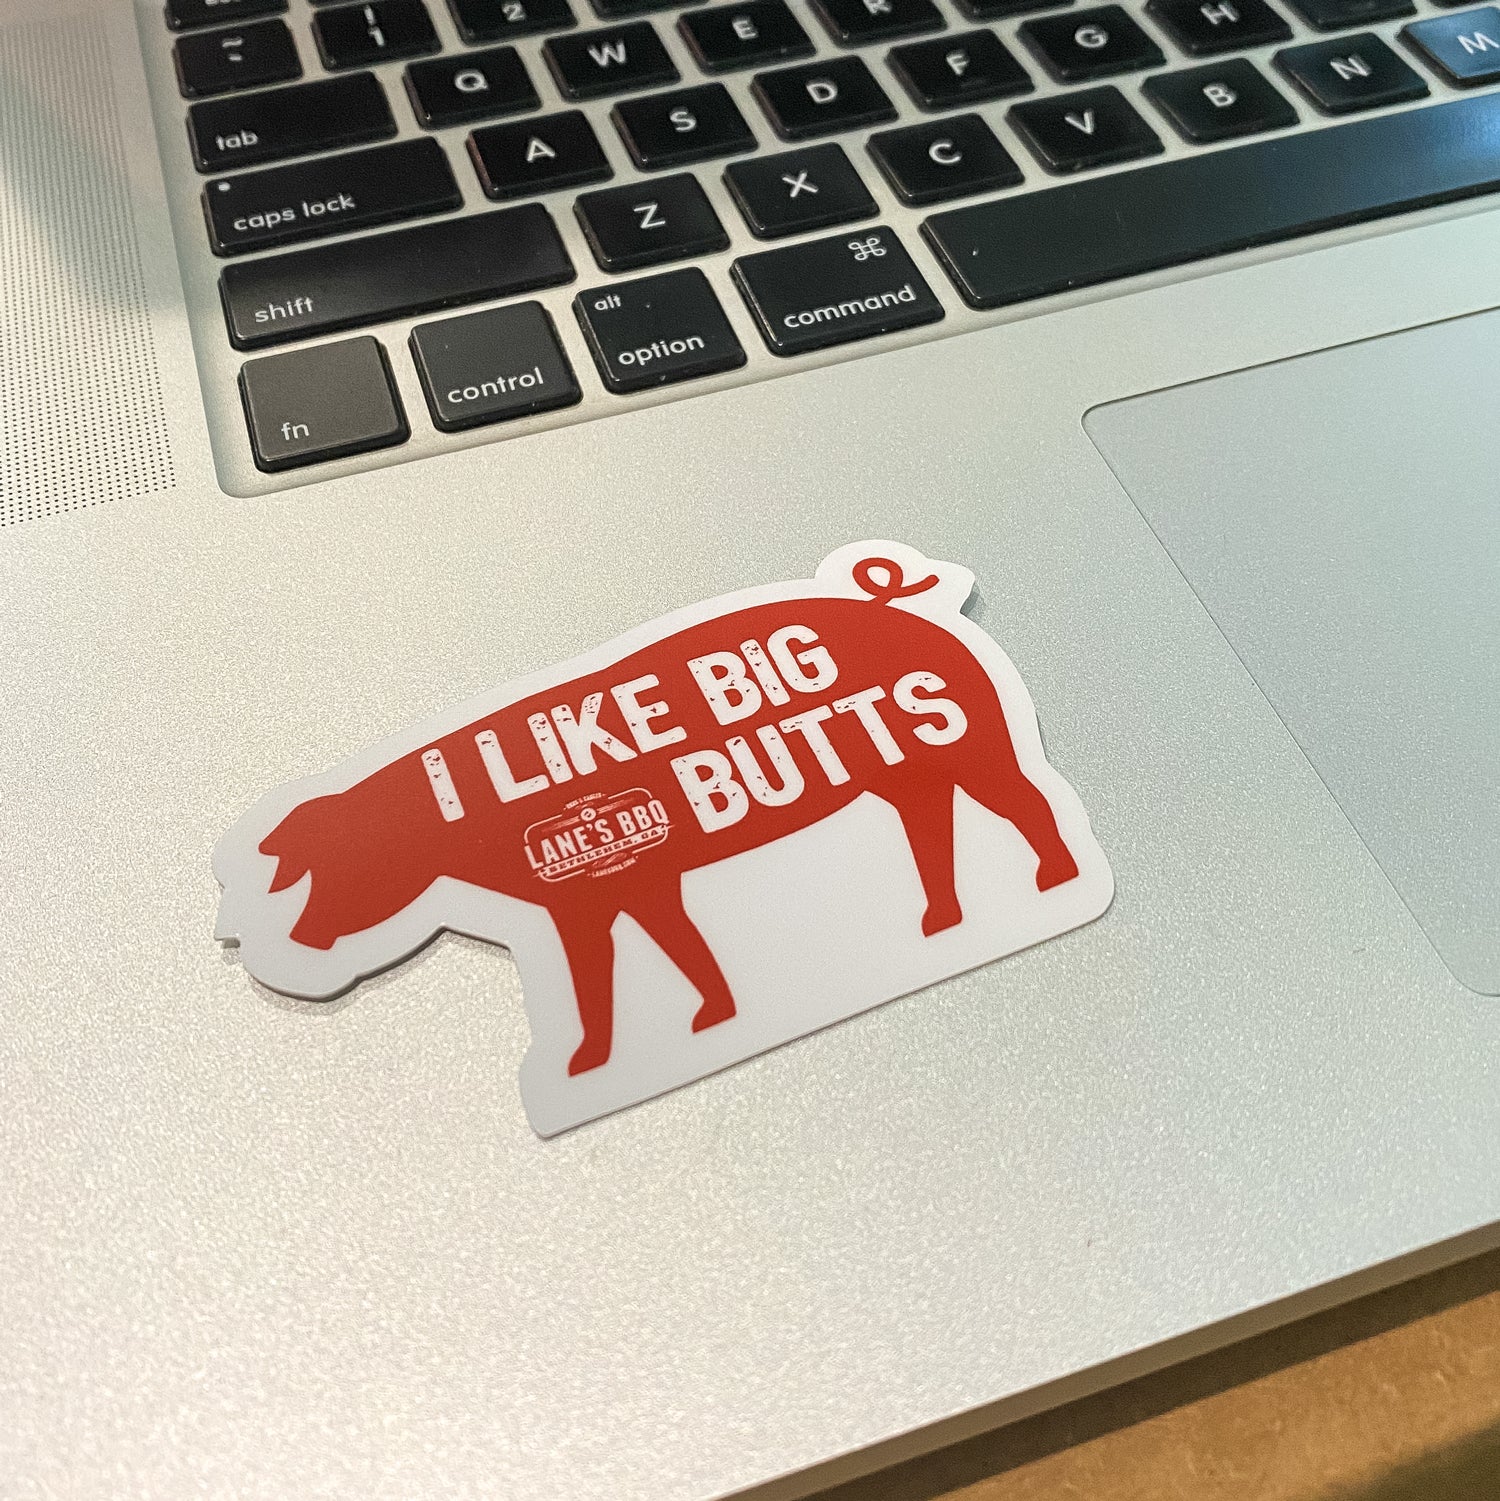 I LIke Big Butts Sticker on a Laptop